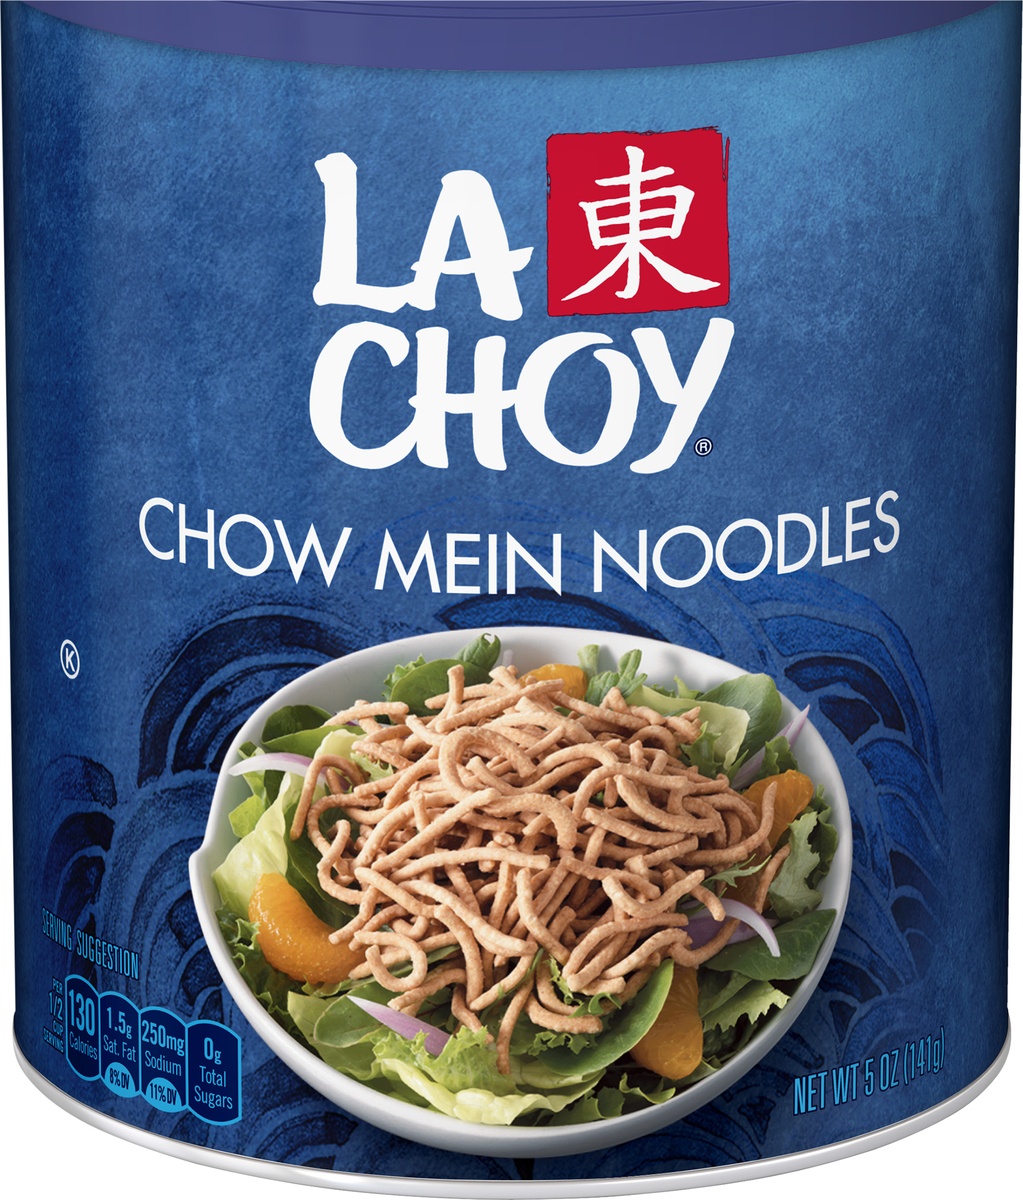 slide 4 of 5, La Choy Chow Mein Noodles, 5 oz